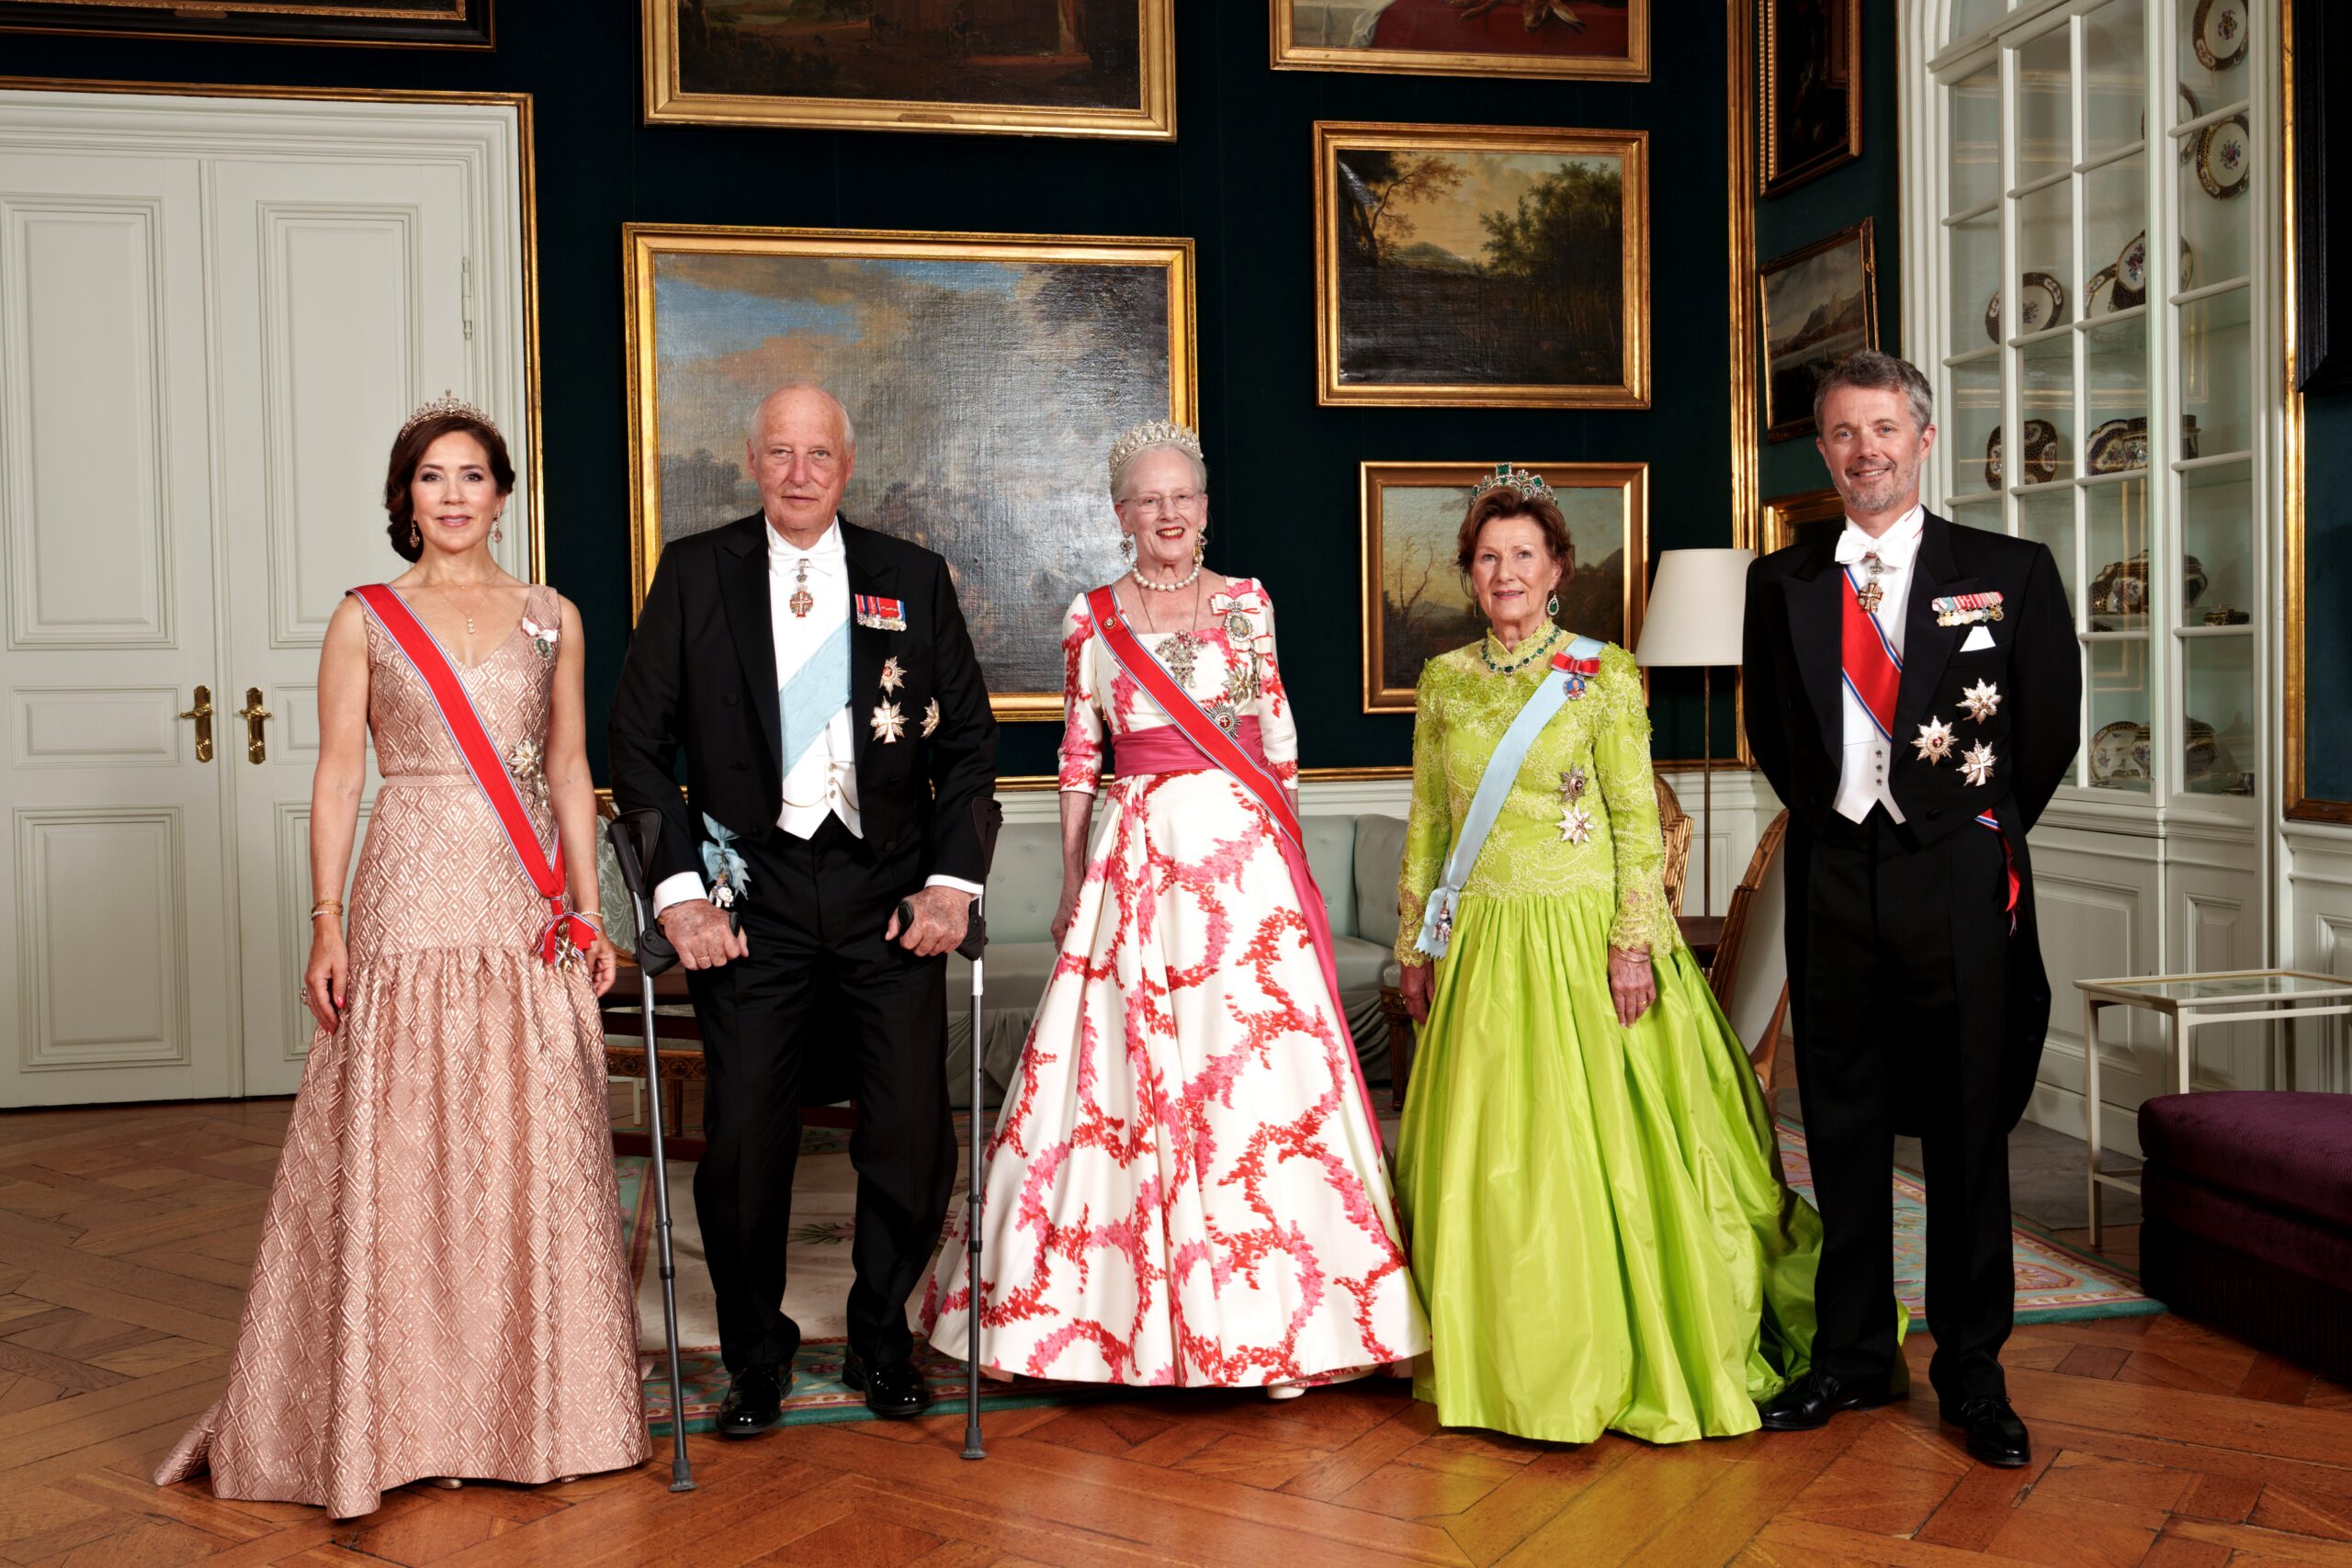 Kongelige deltakere bekrefter oppmøte ved feiringen av den svenske kongens jubileum – Royal Central